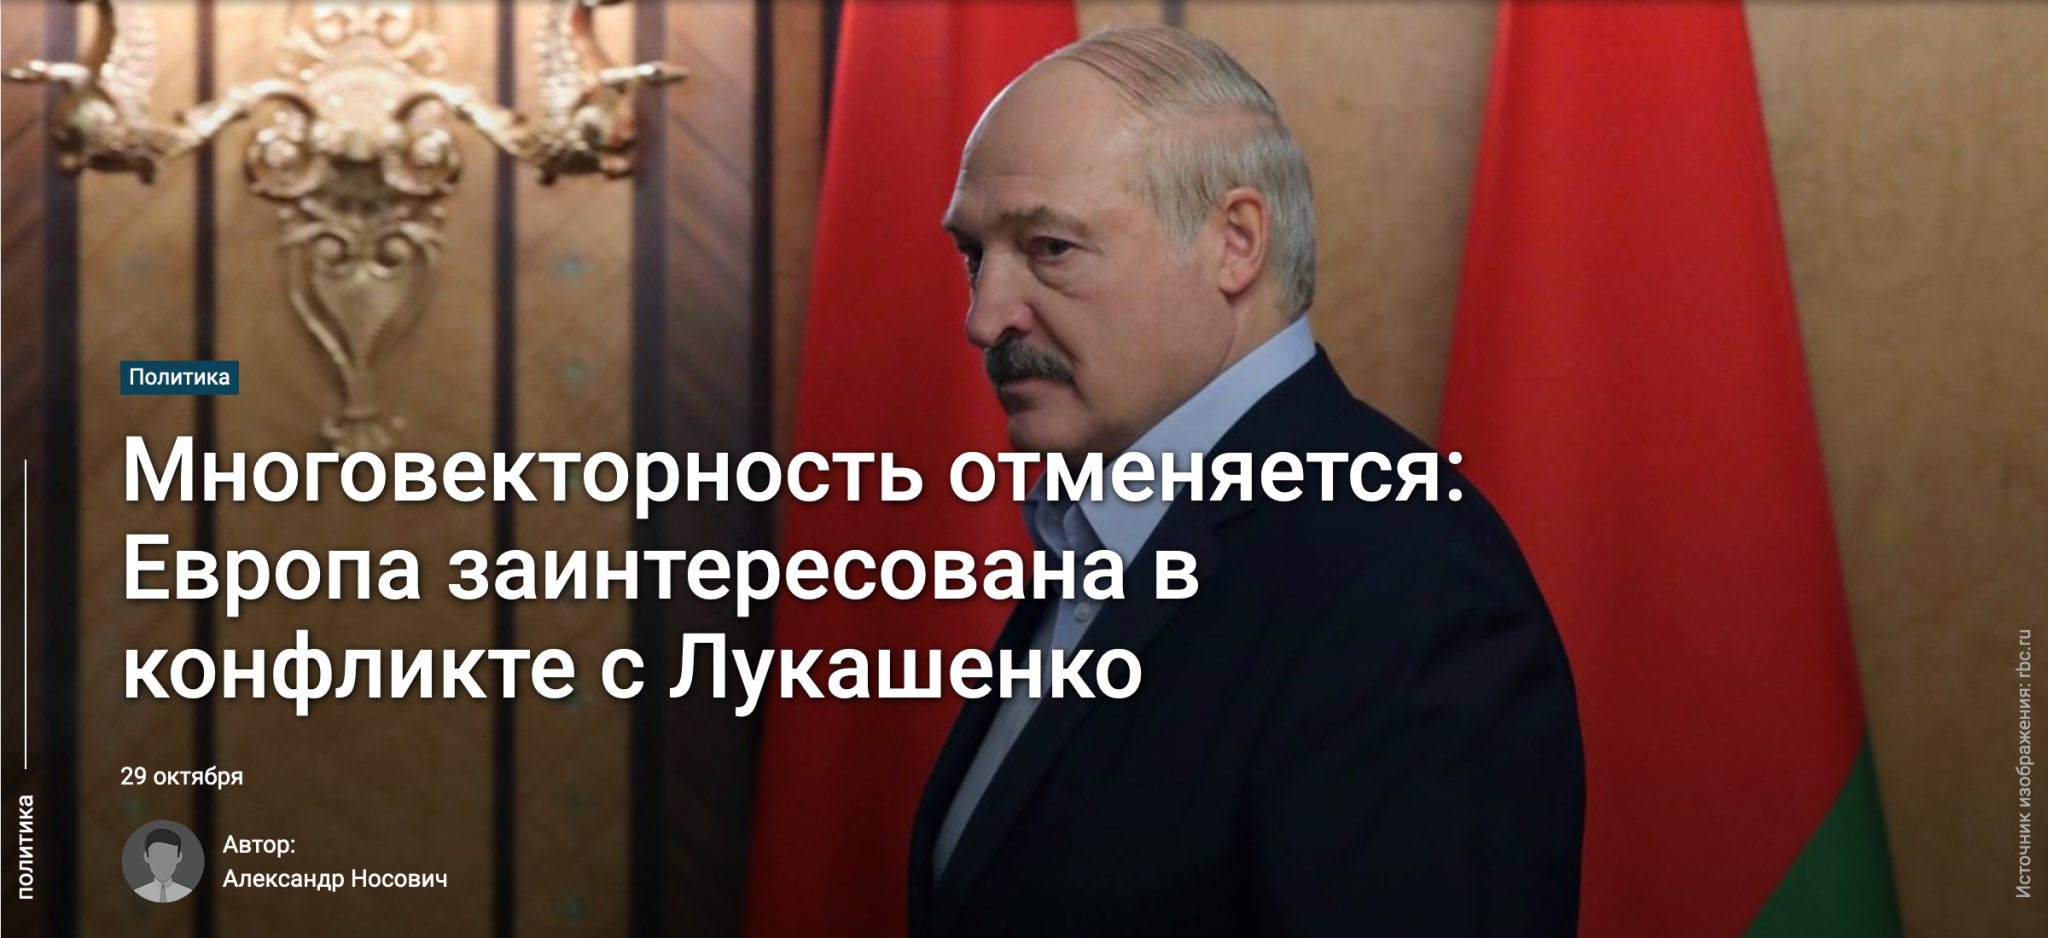 "Zmieniająca się wielowektorowość: Europa jest zainteresowana konfliktem z Łukaszenką"